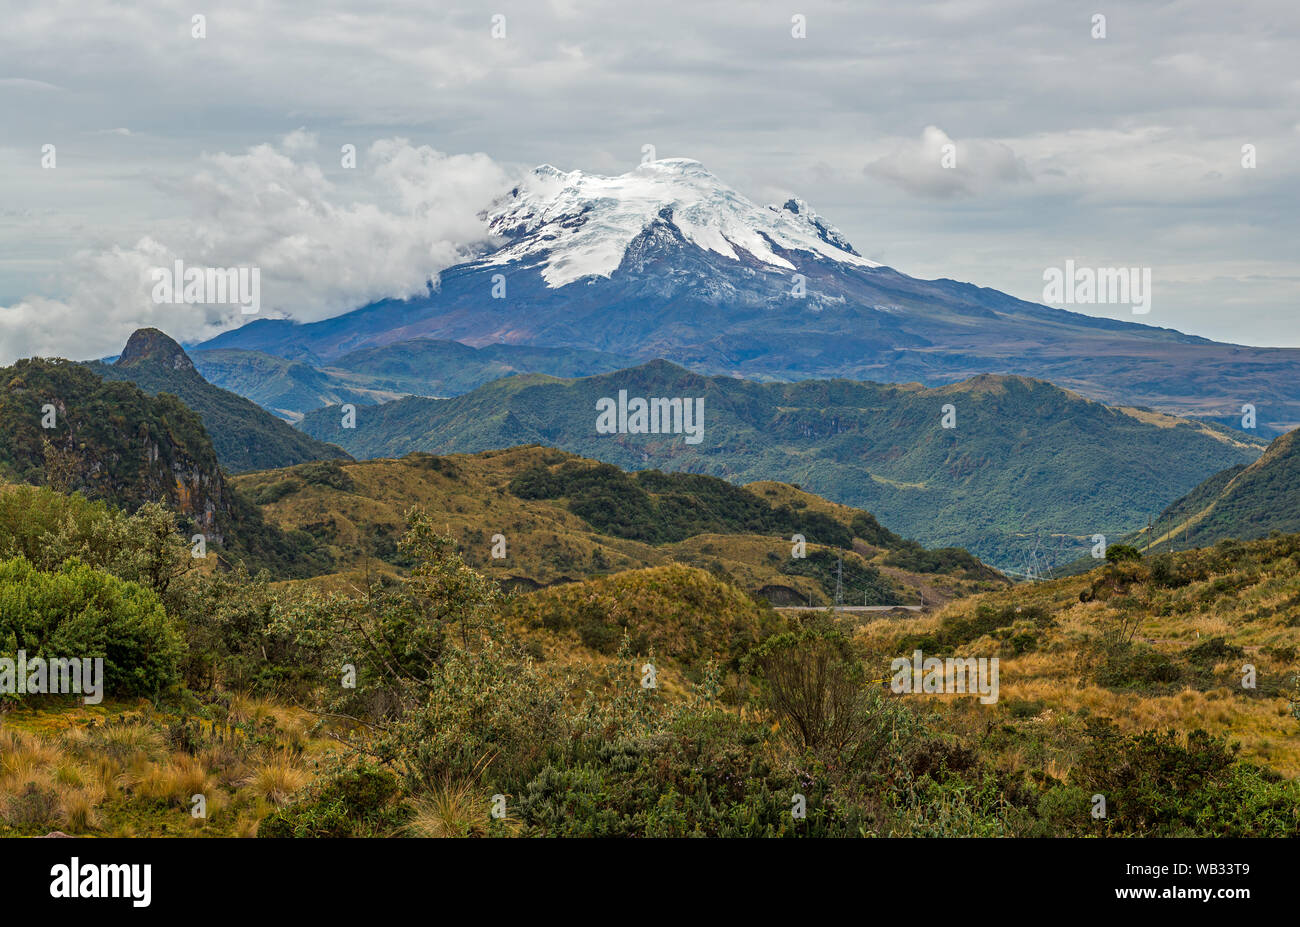 Paesaggio con il picco del vulcano Artisana con neve e ghiaccio internamente Antisana riserva ecologica nella Cordigliera delle Ande vicino a Quito, Ecuador. Foto Stock